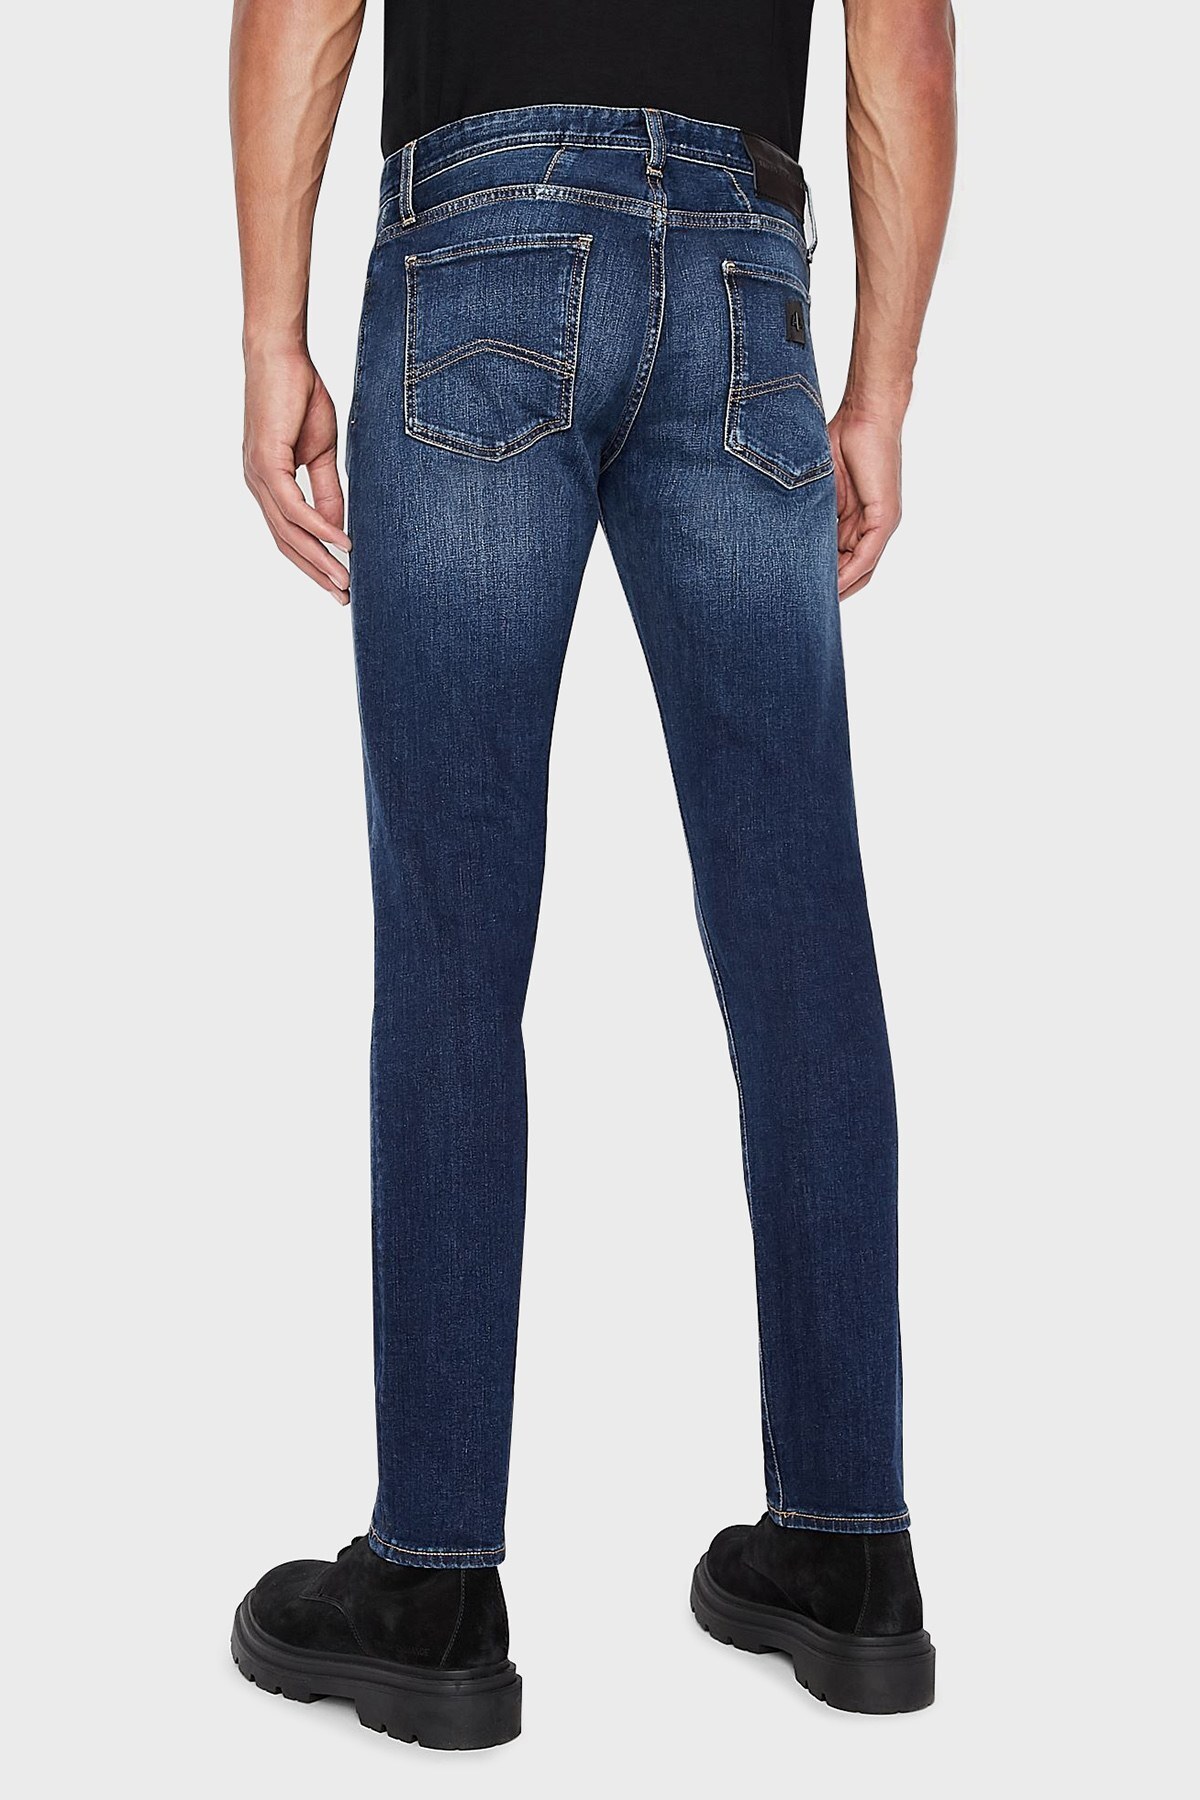 Armani Exchange Pamuklu Skinny Fit J14 Jeans Erkek Kot Pantolon 6KZJ14 Z1P3Z 1500 LACİVERT